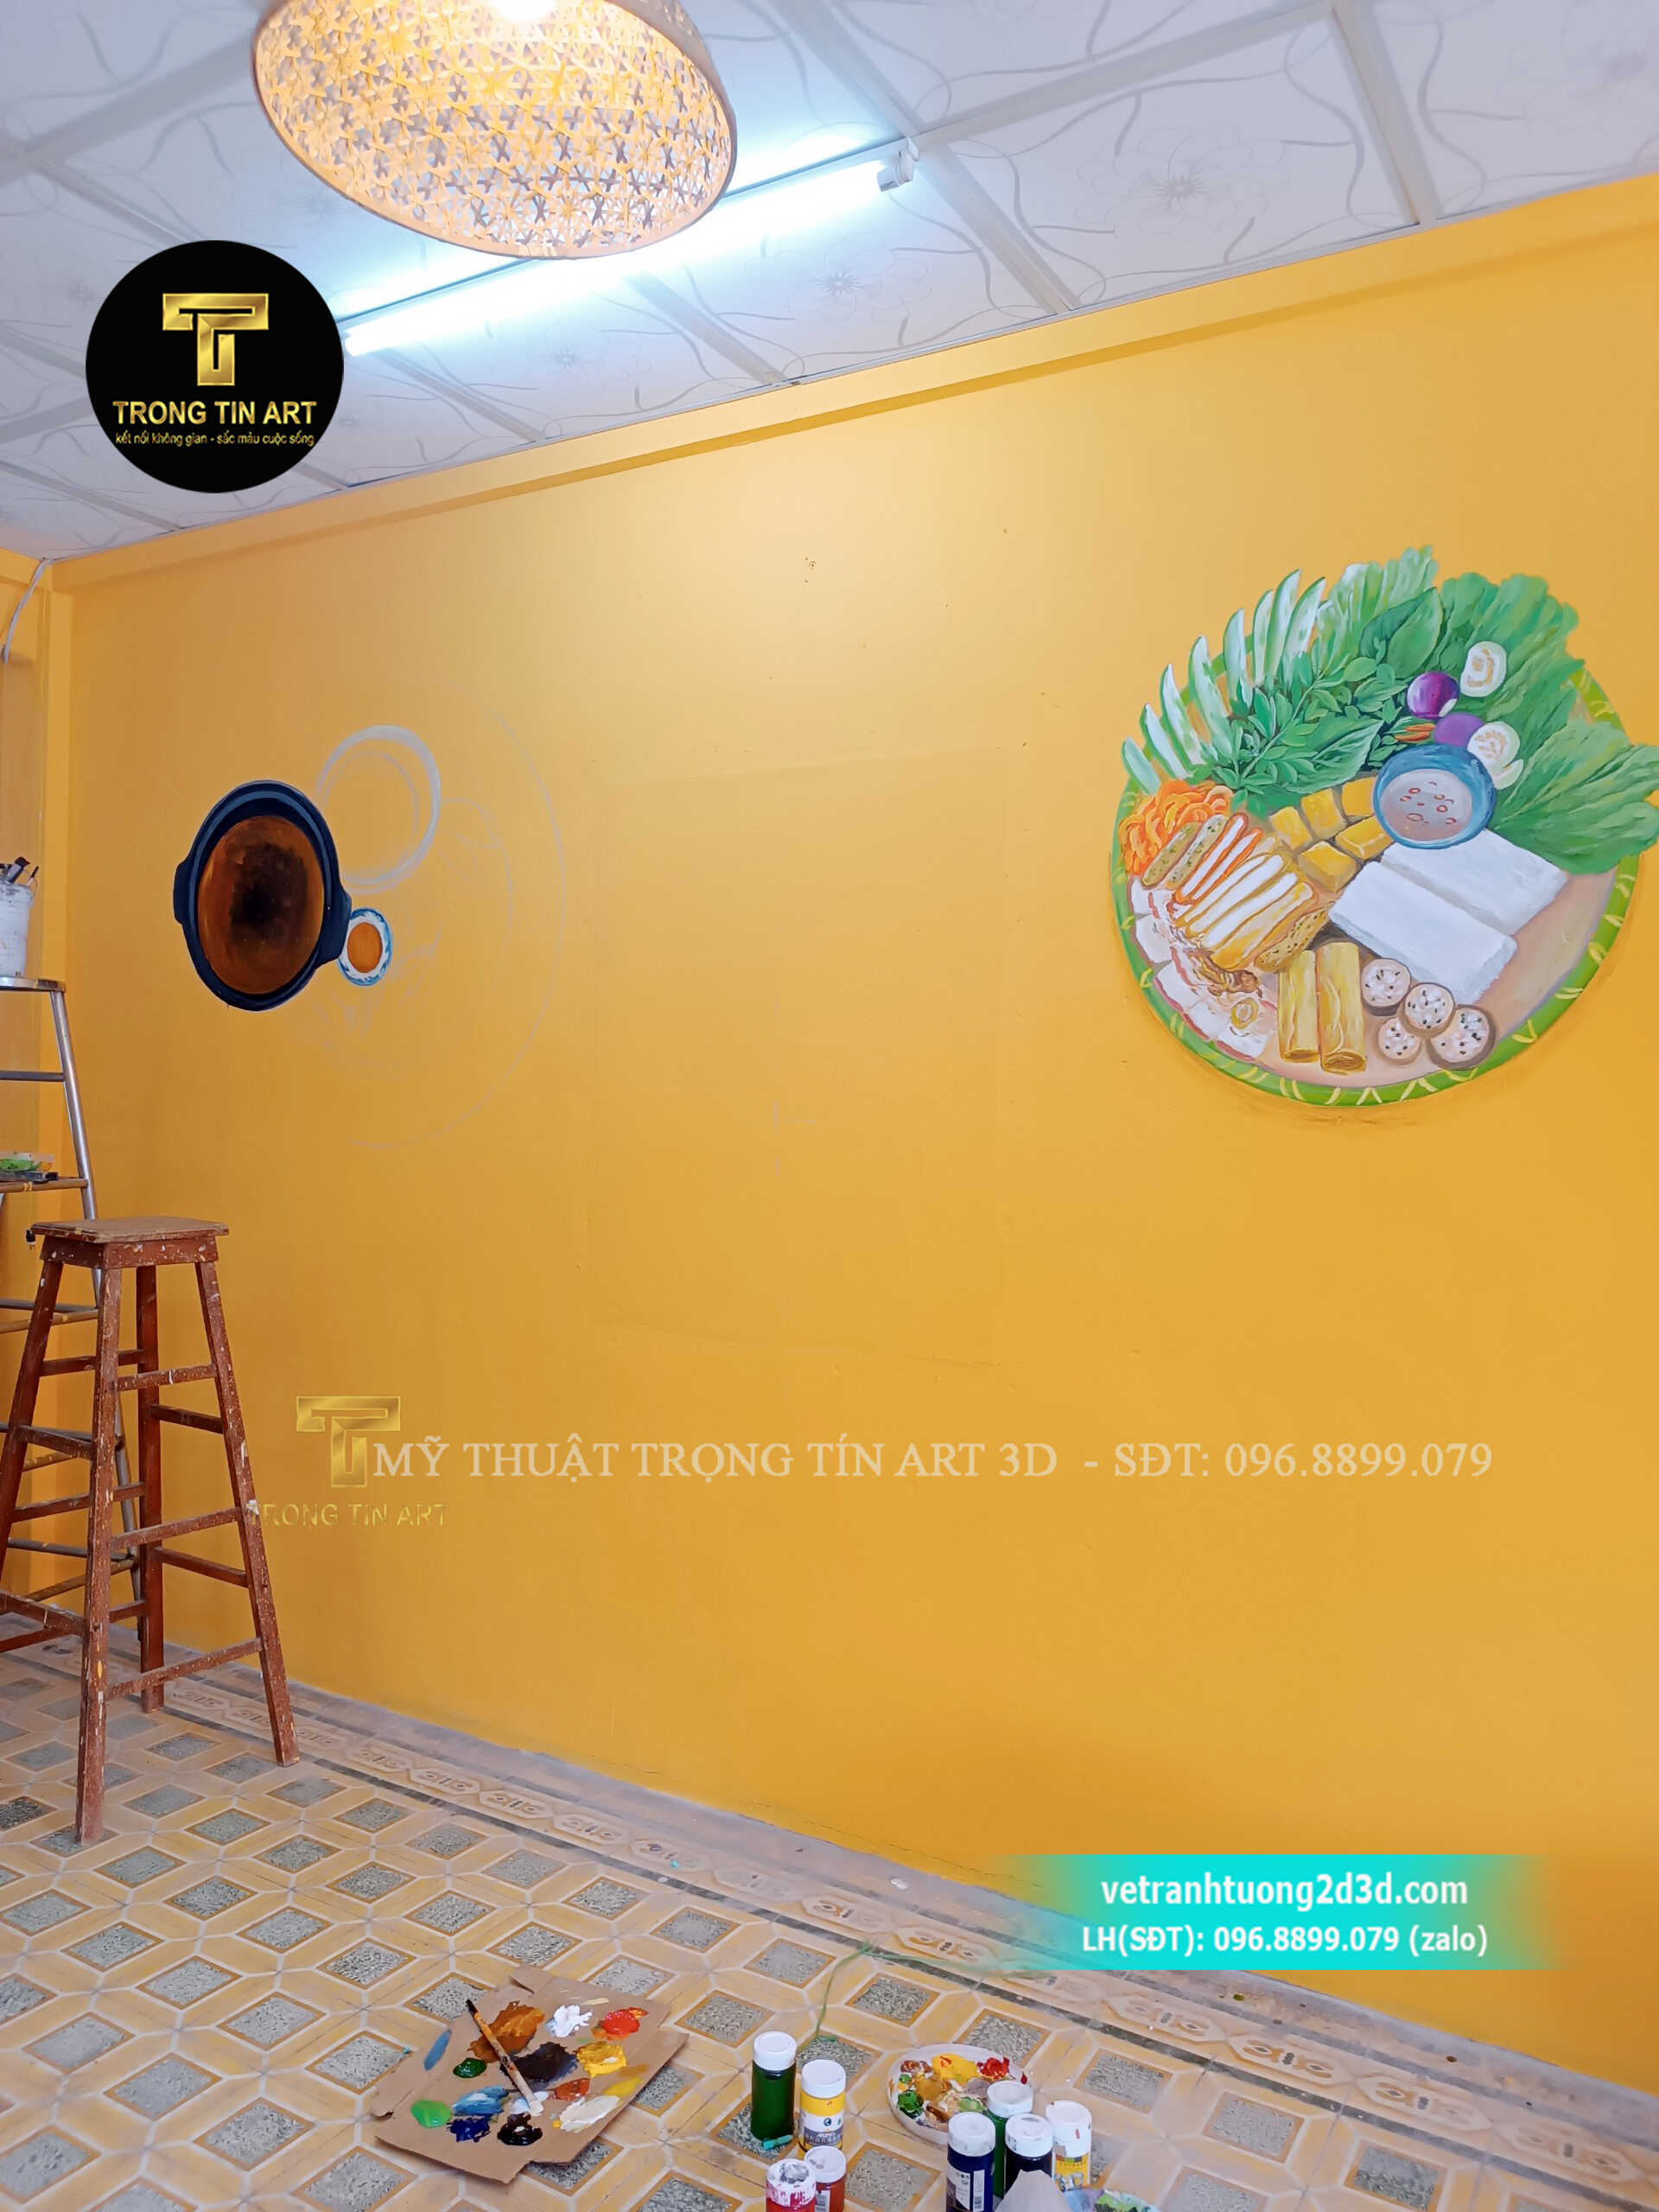 Vẽ tranh tường quán bún đậu mắm tôm,vẽ tranh tường quán bún đậu,tranh tường bún đậu,tranh tường cháo ếch singapore,tranh tường trà sữa